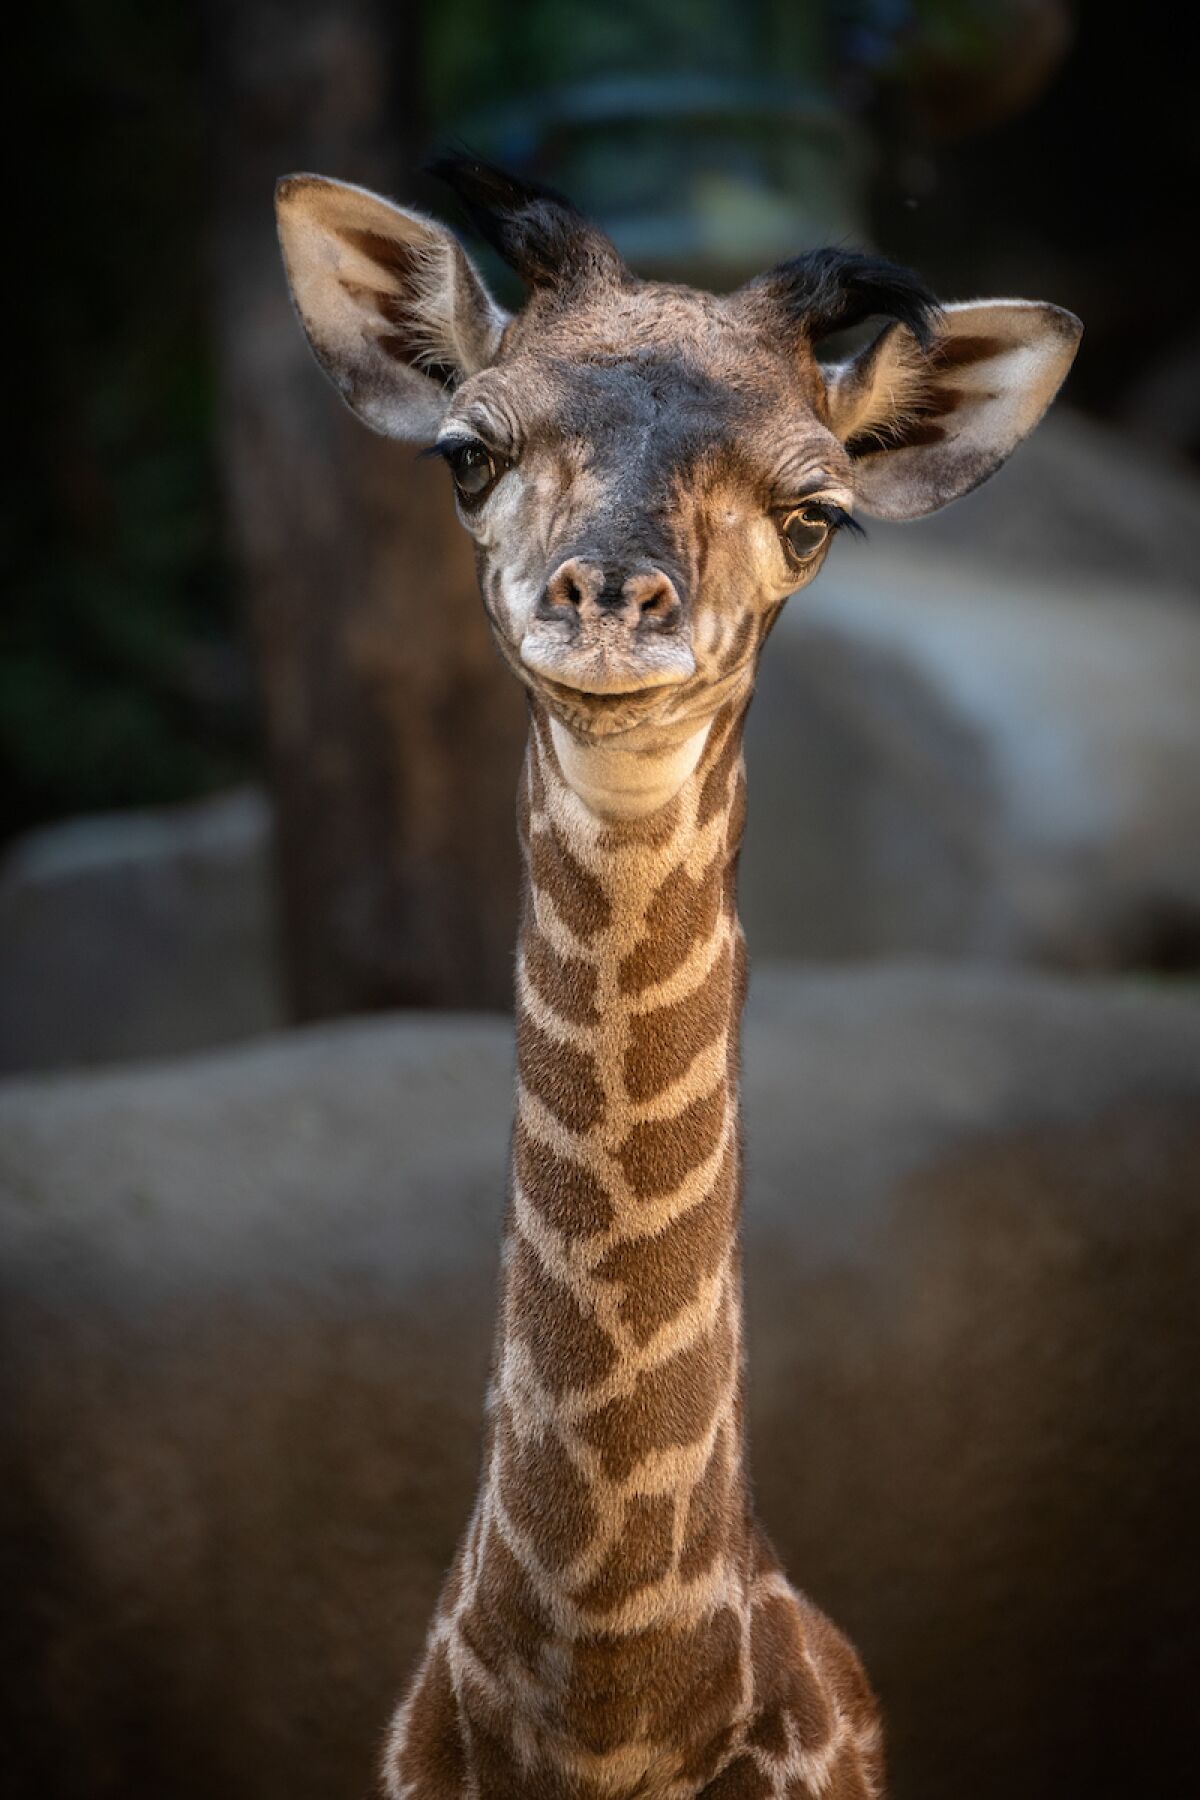 The baby giraffe, still unnamed, was born Oct. 5.